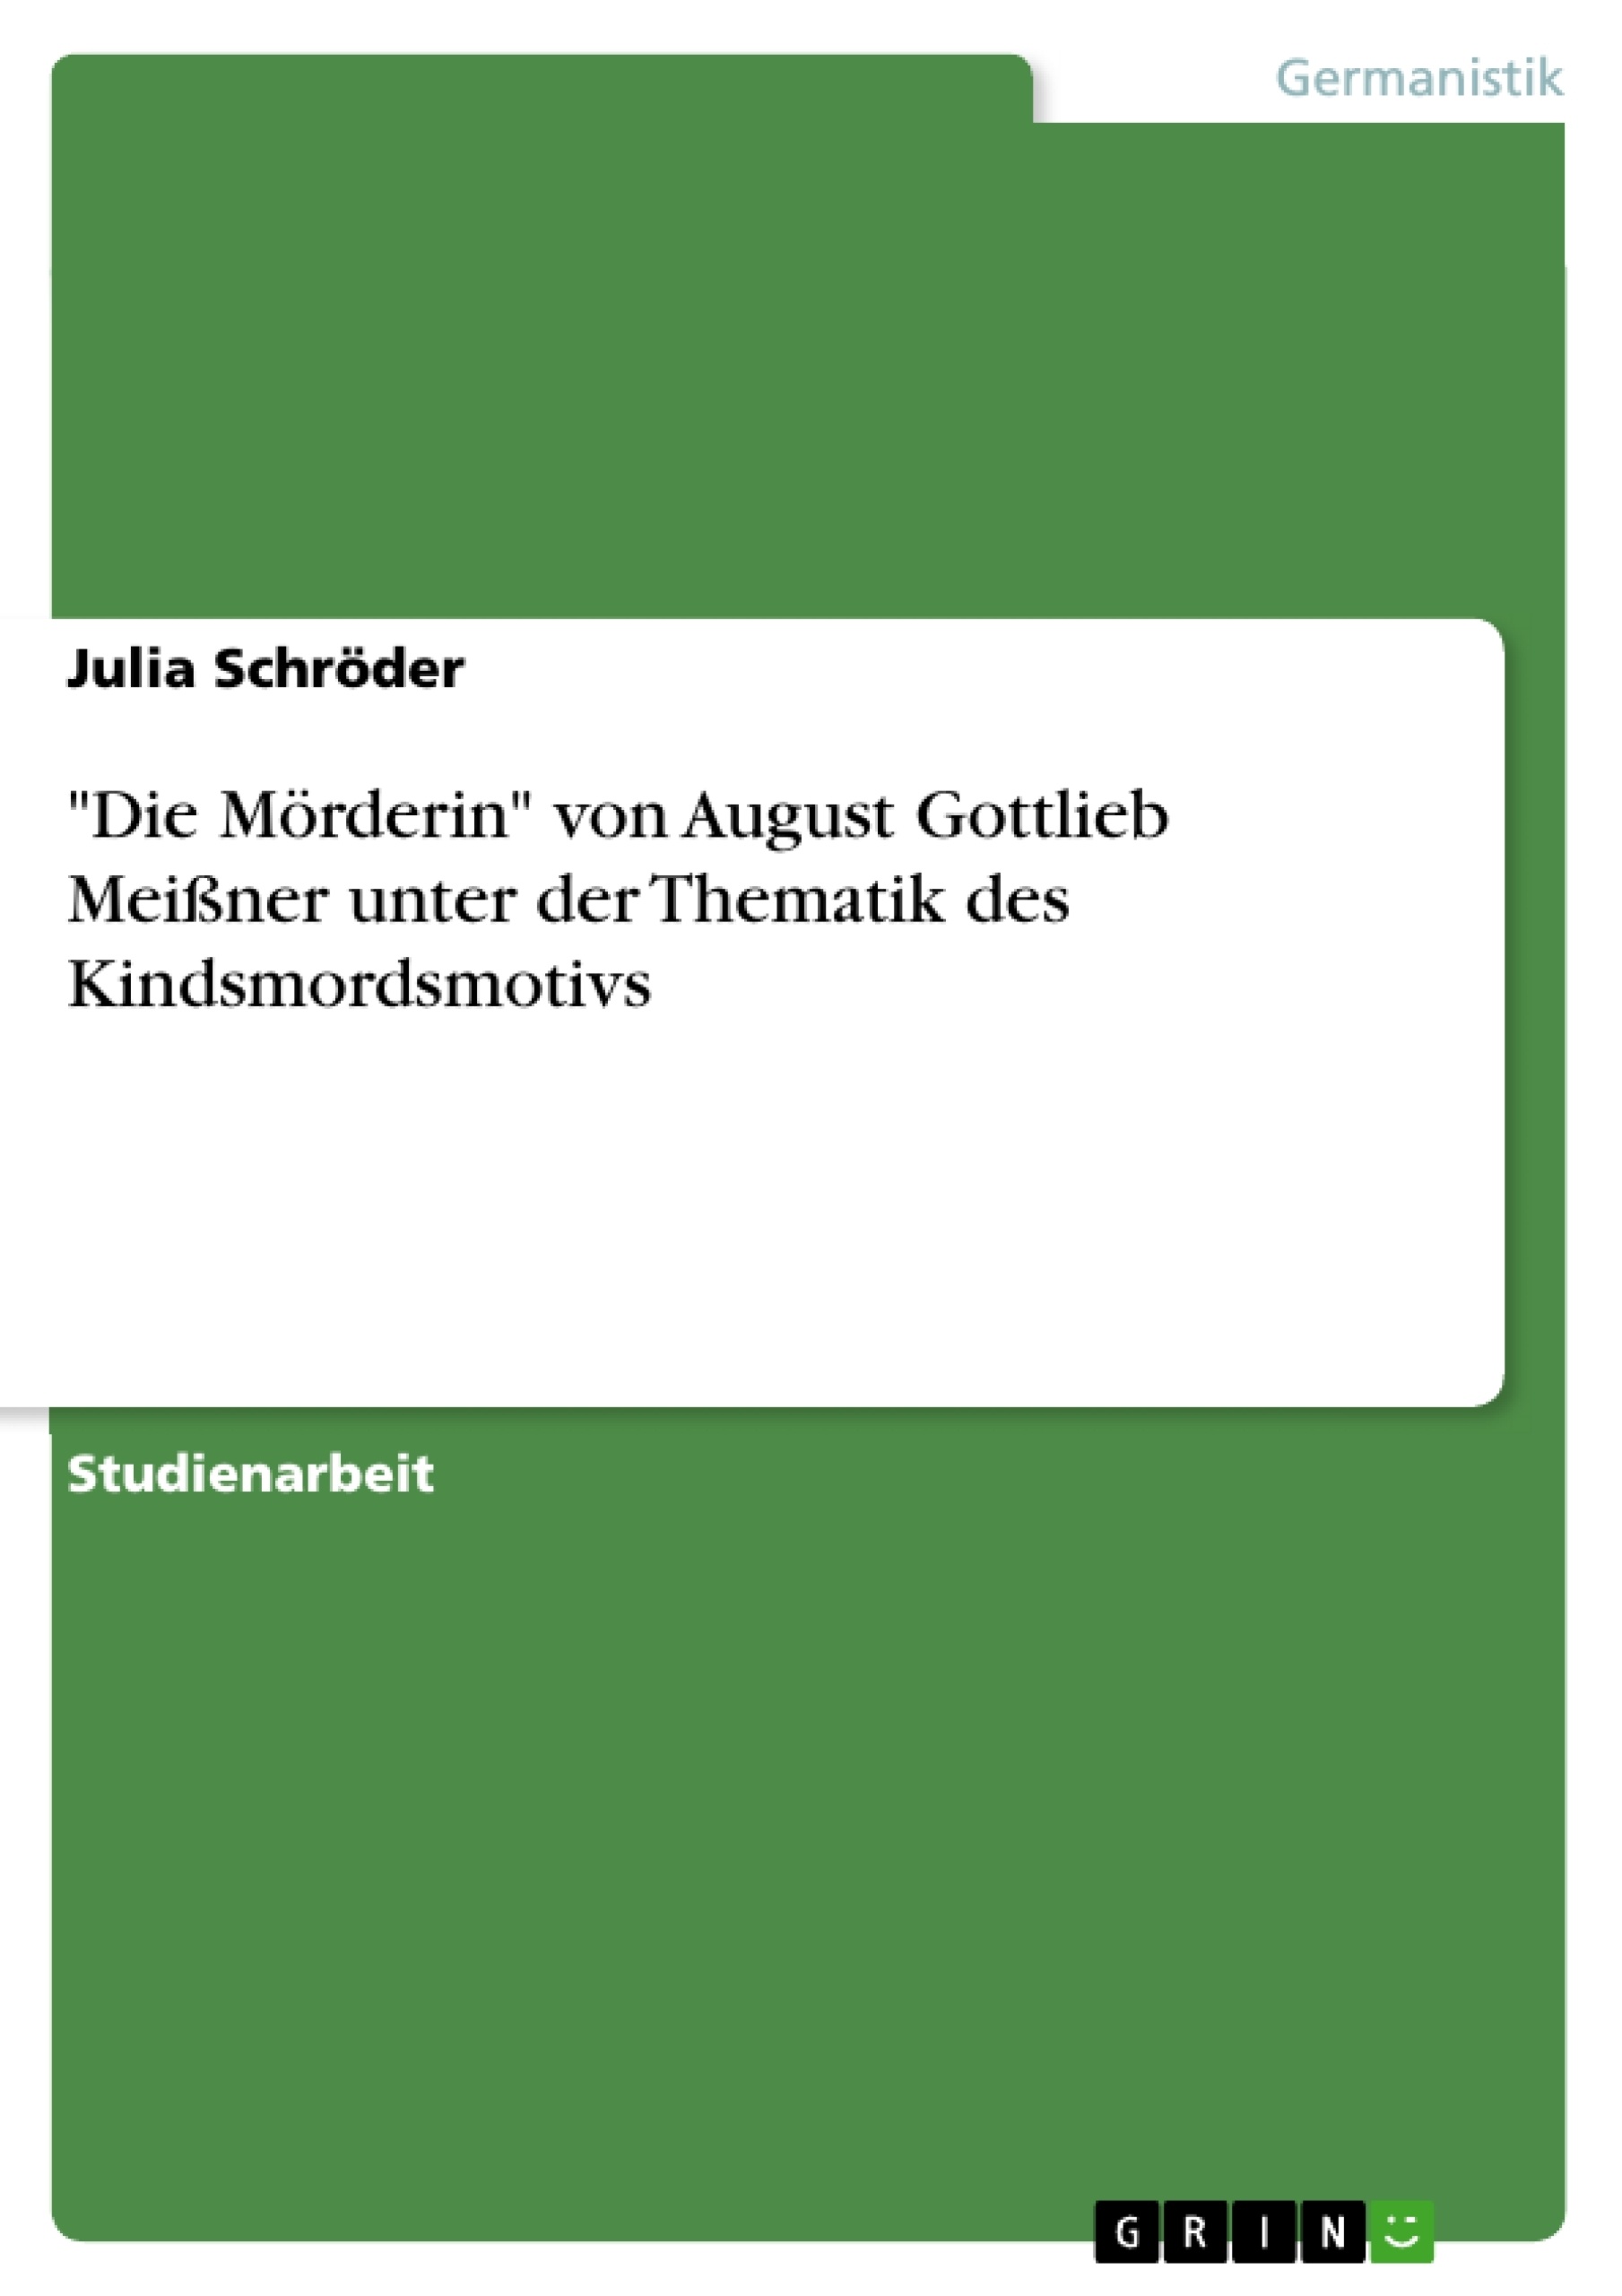 Titre: "Die Mörderin" von August Gottlieb Meißner unter der Thematik des Kindsmordsmotivs